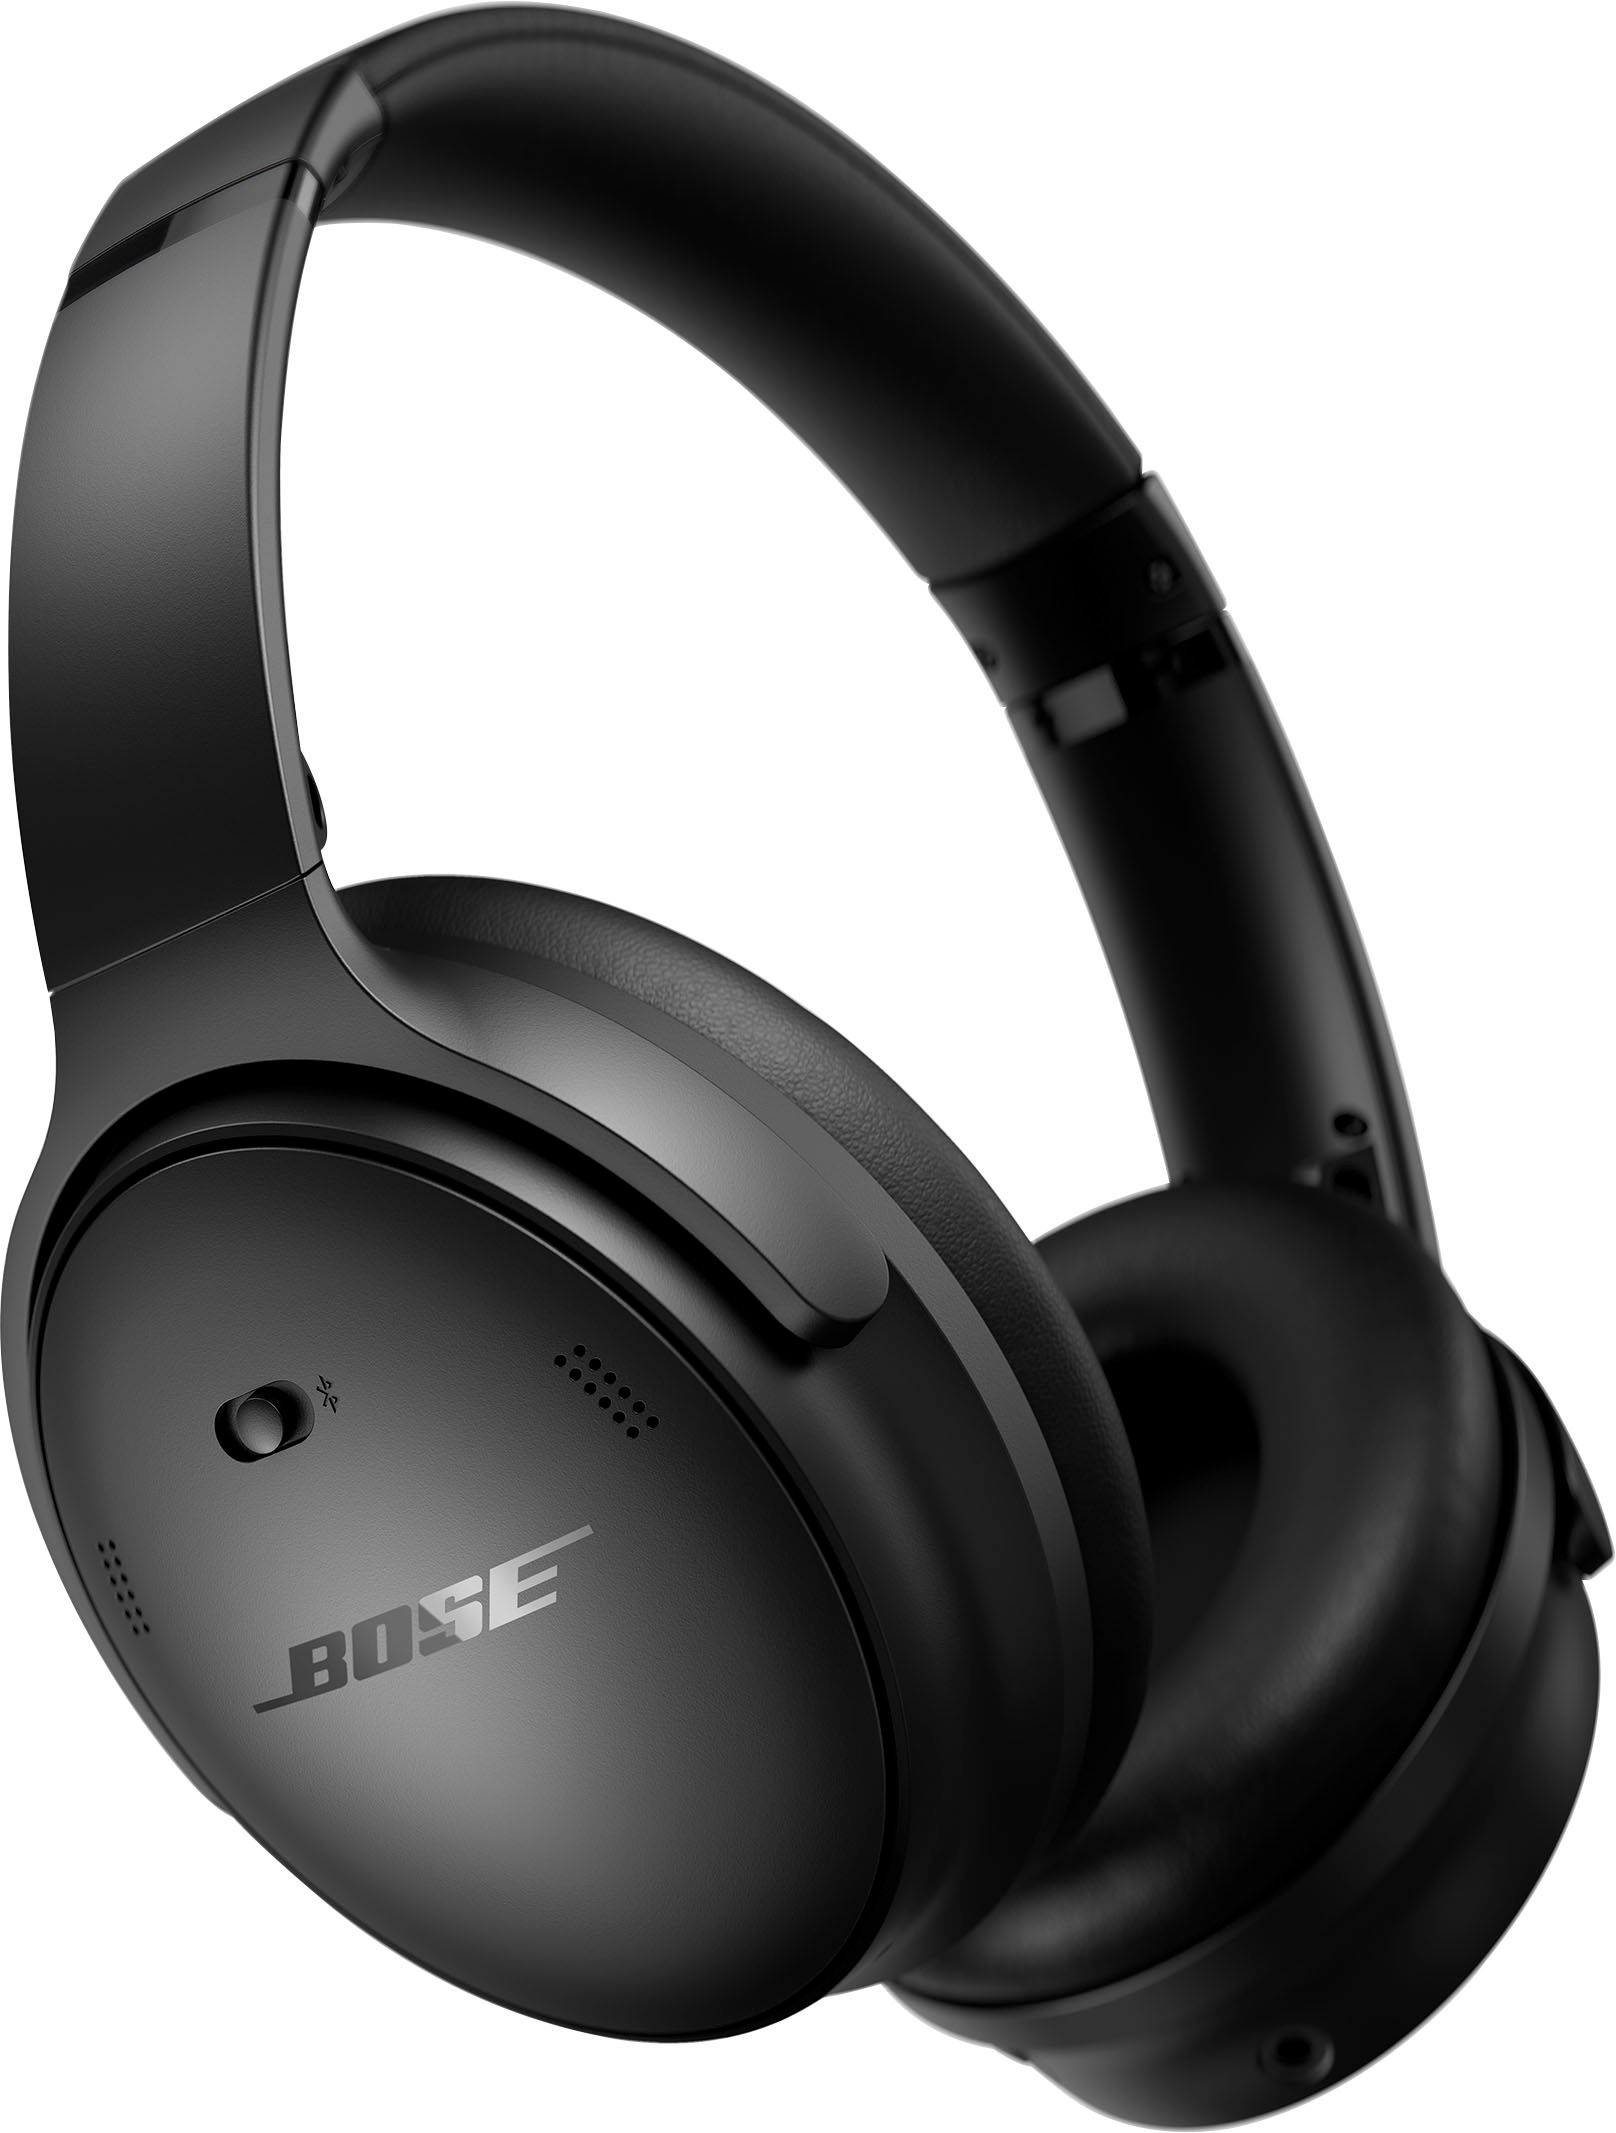 Bose QuietComfort Wireless Noise Cancelling Over-the-Ear Headphones Black 884367-0100 - Best Buy | Best Buy U.S.